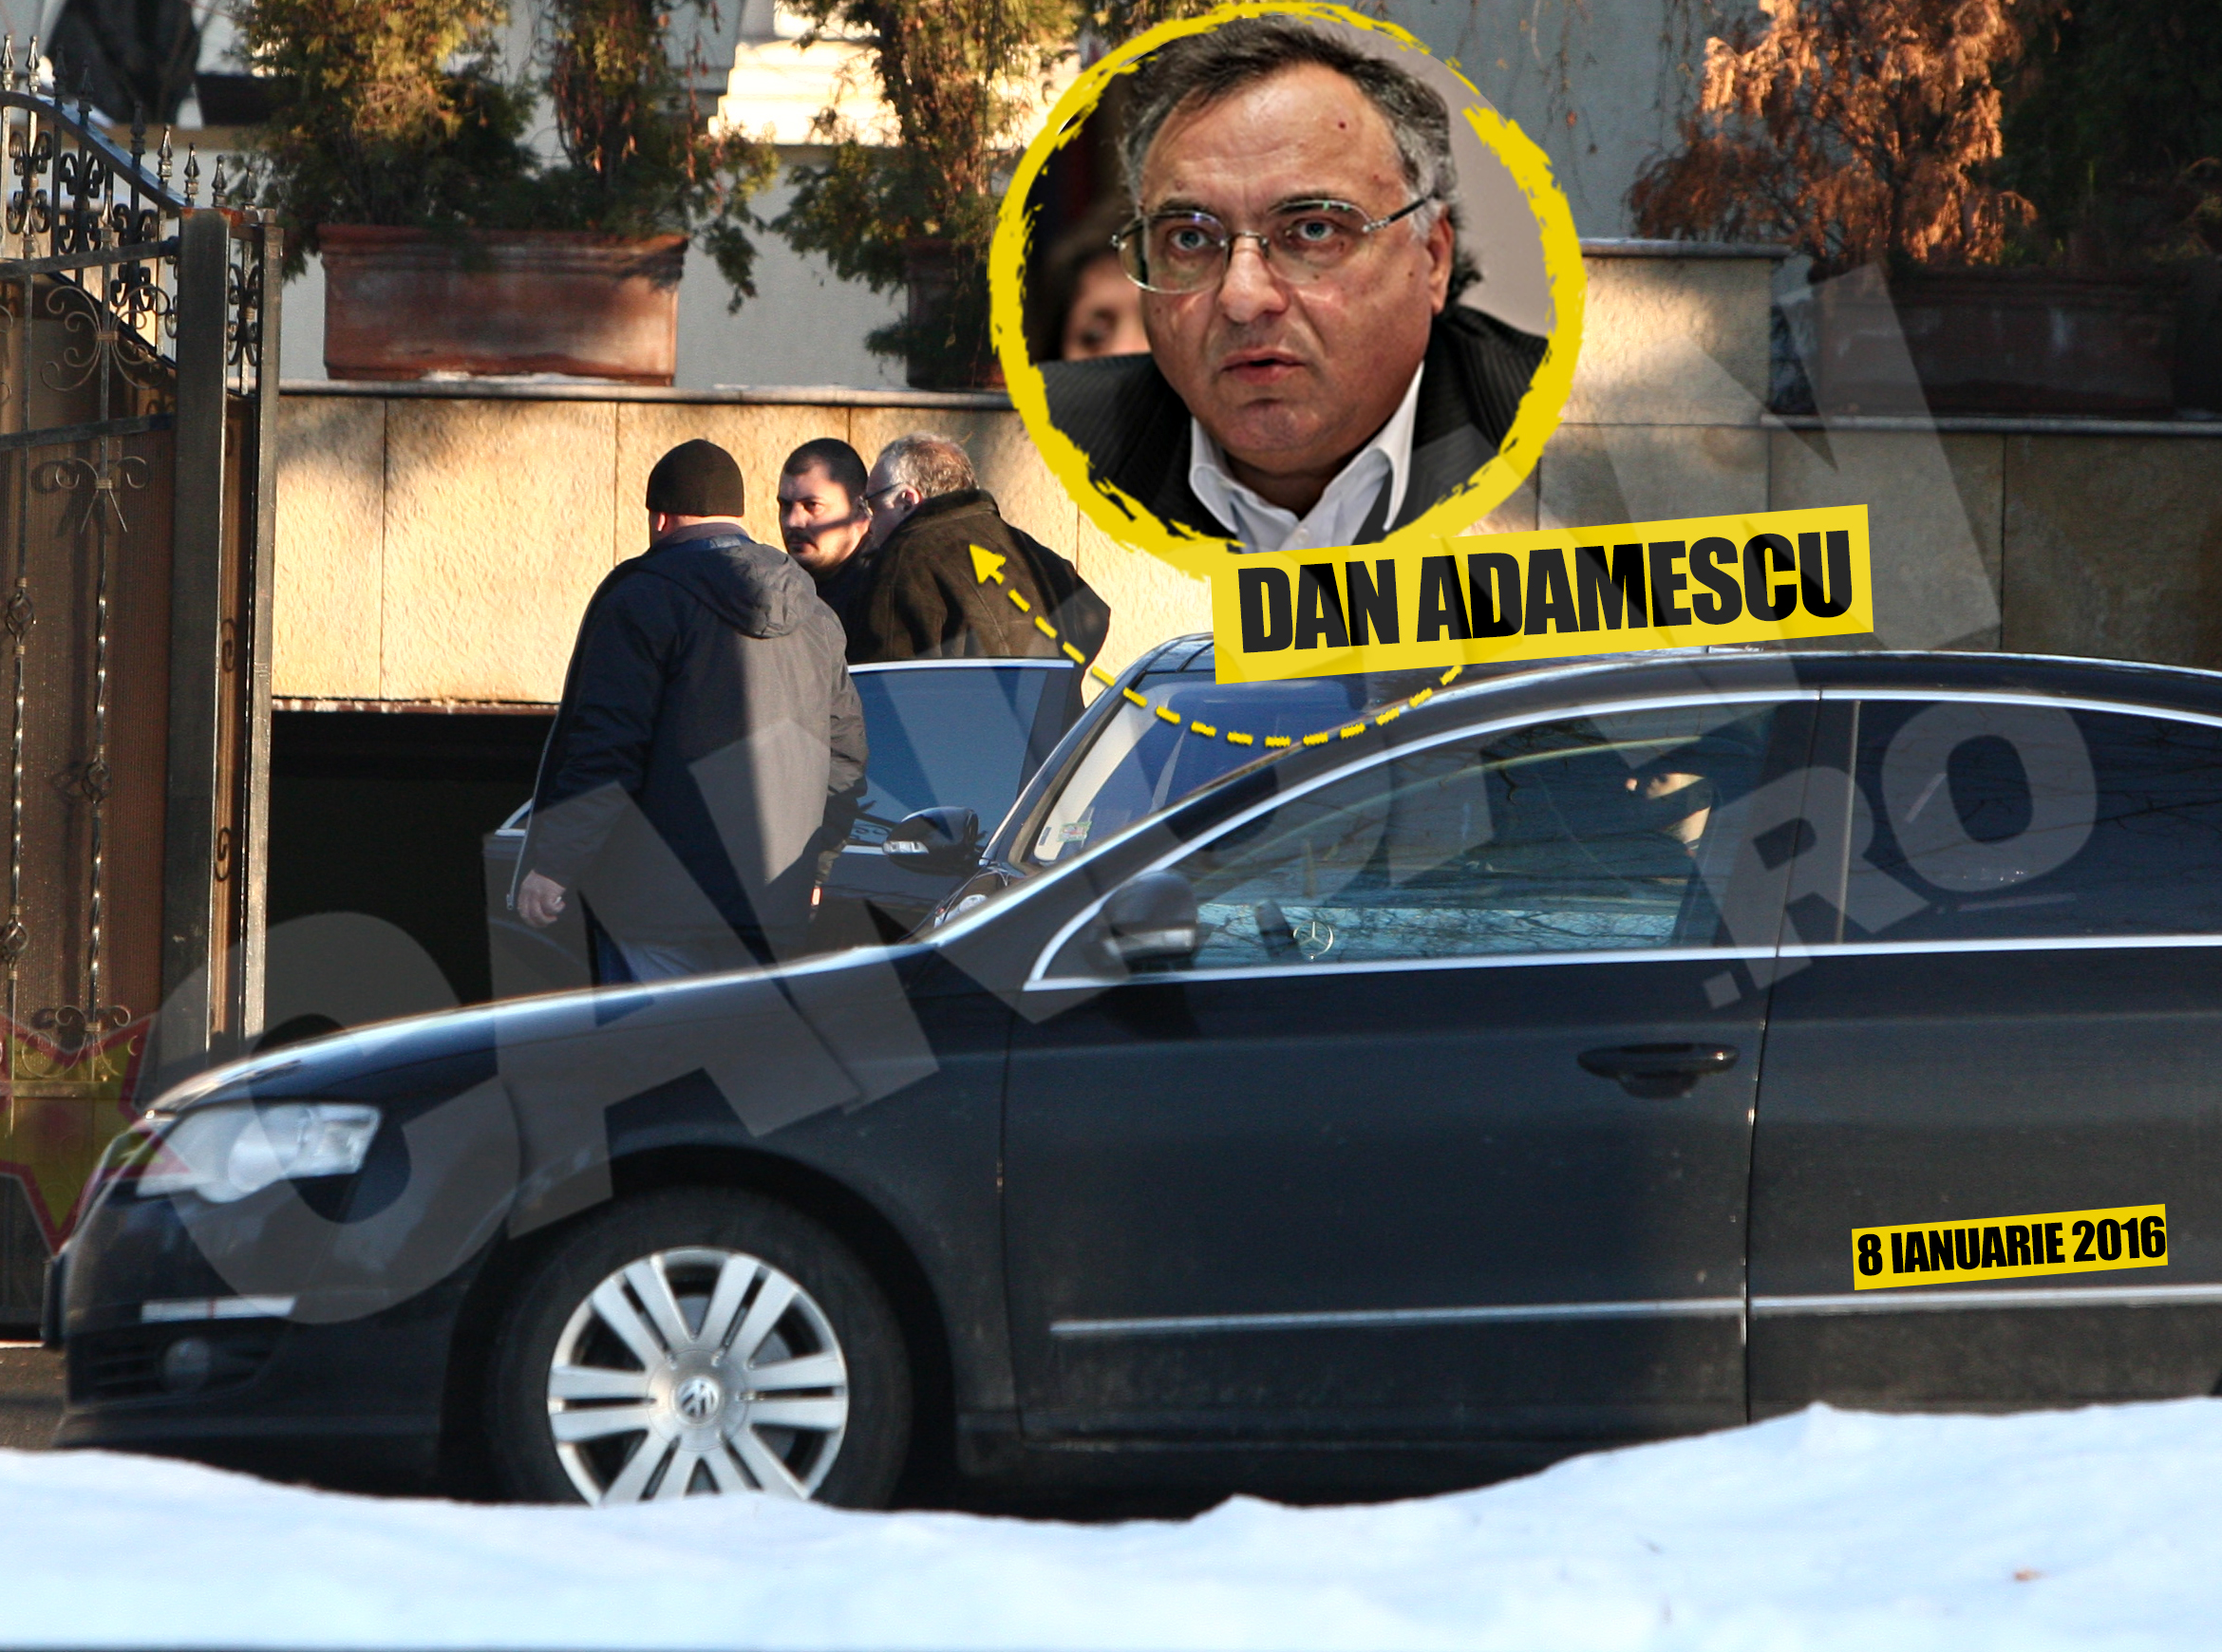 Nici miliardarul Dan Adamescu nu se desparte vreo secunda de garzile lui de corp, fiind pazit non-stop